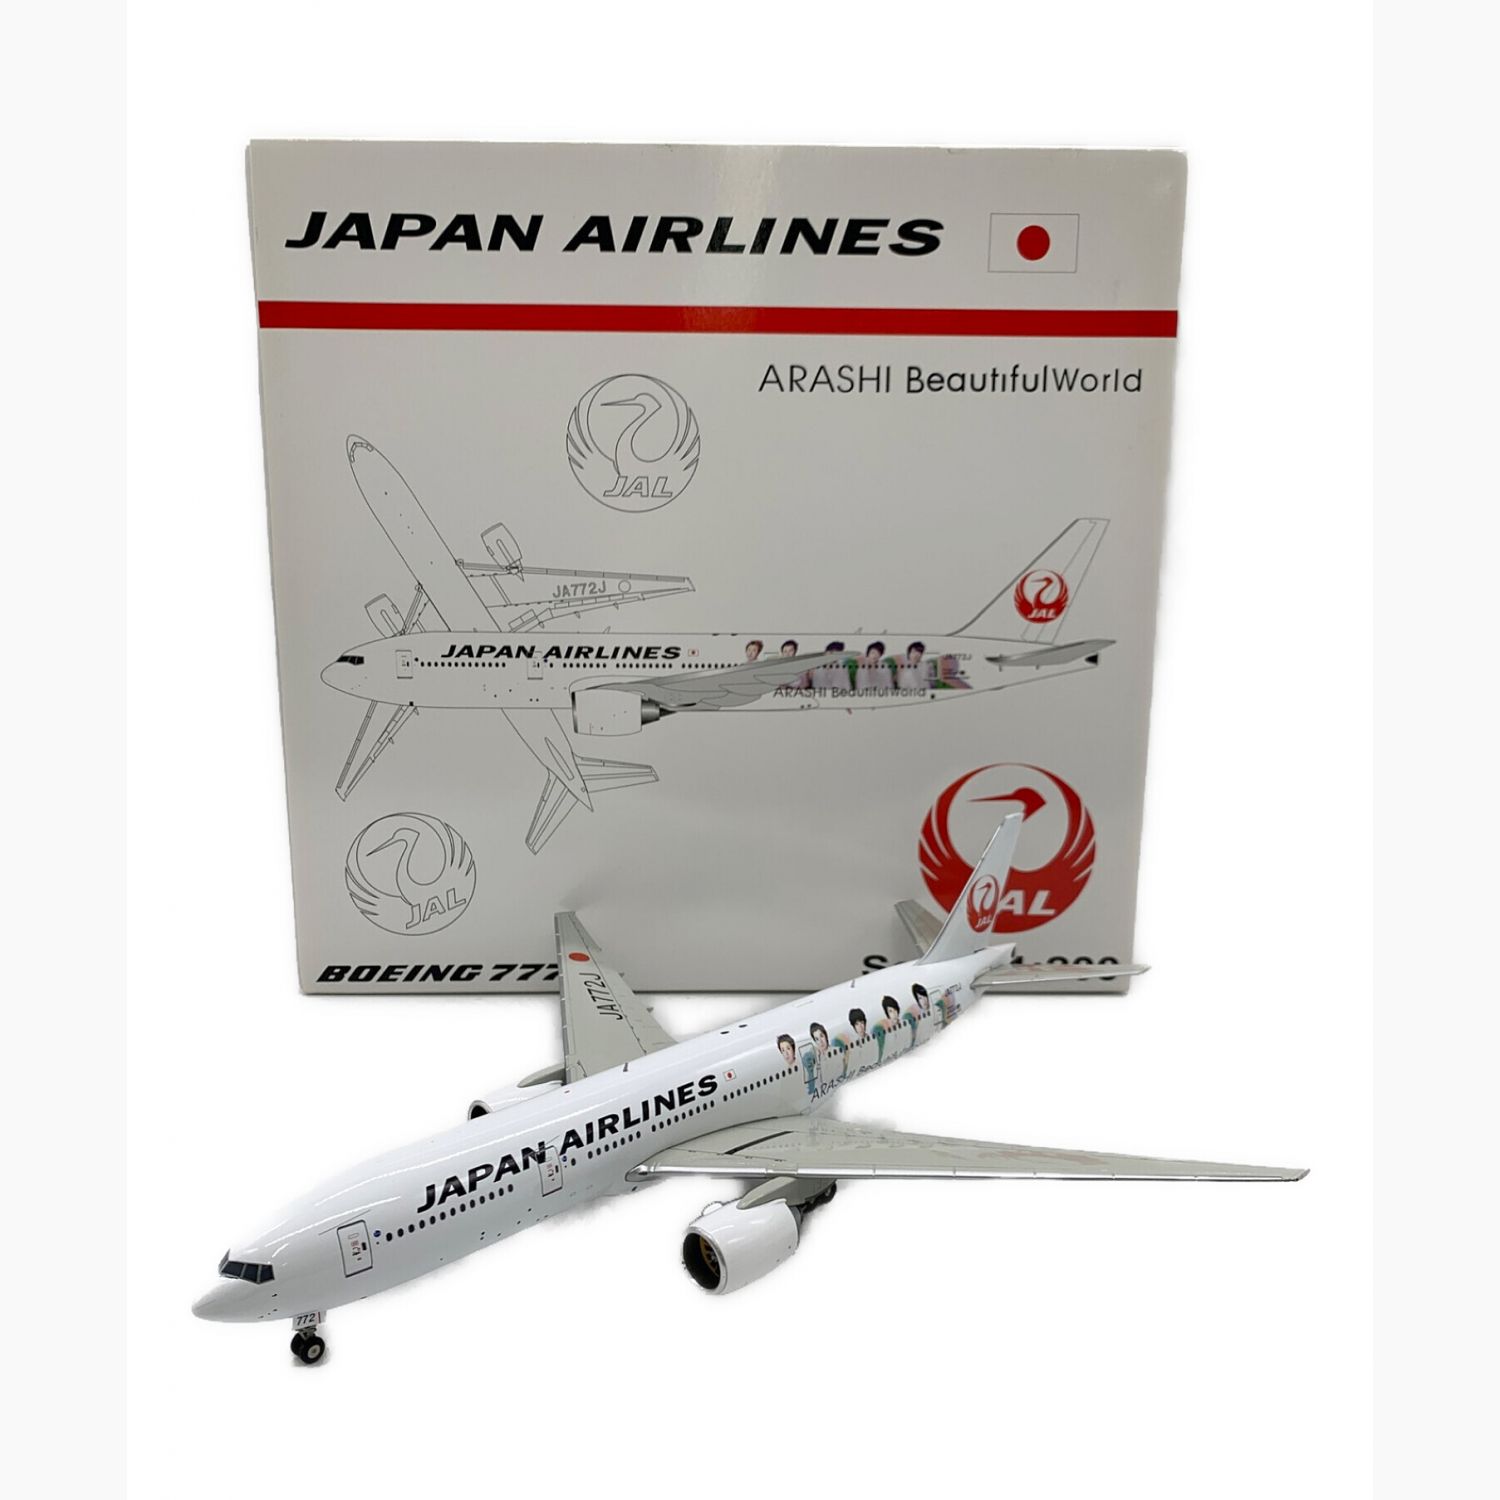 その他【未使用品】嵐20周年記念 JAL 1/200サイズ模型 350名限定